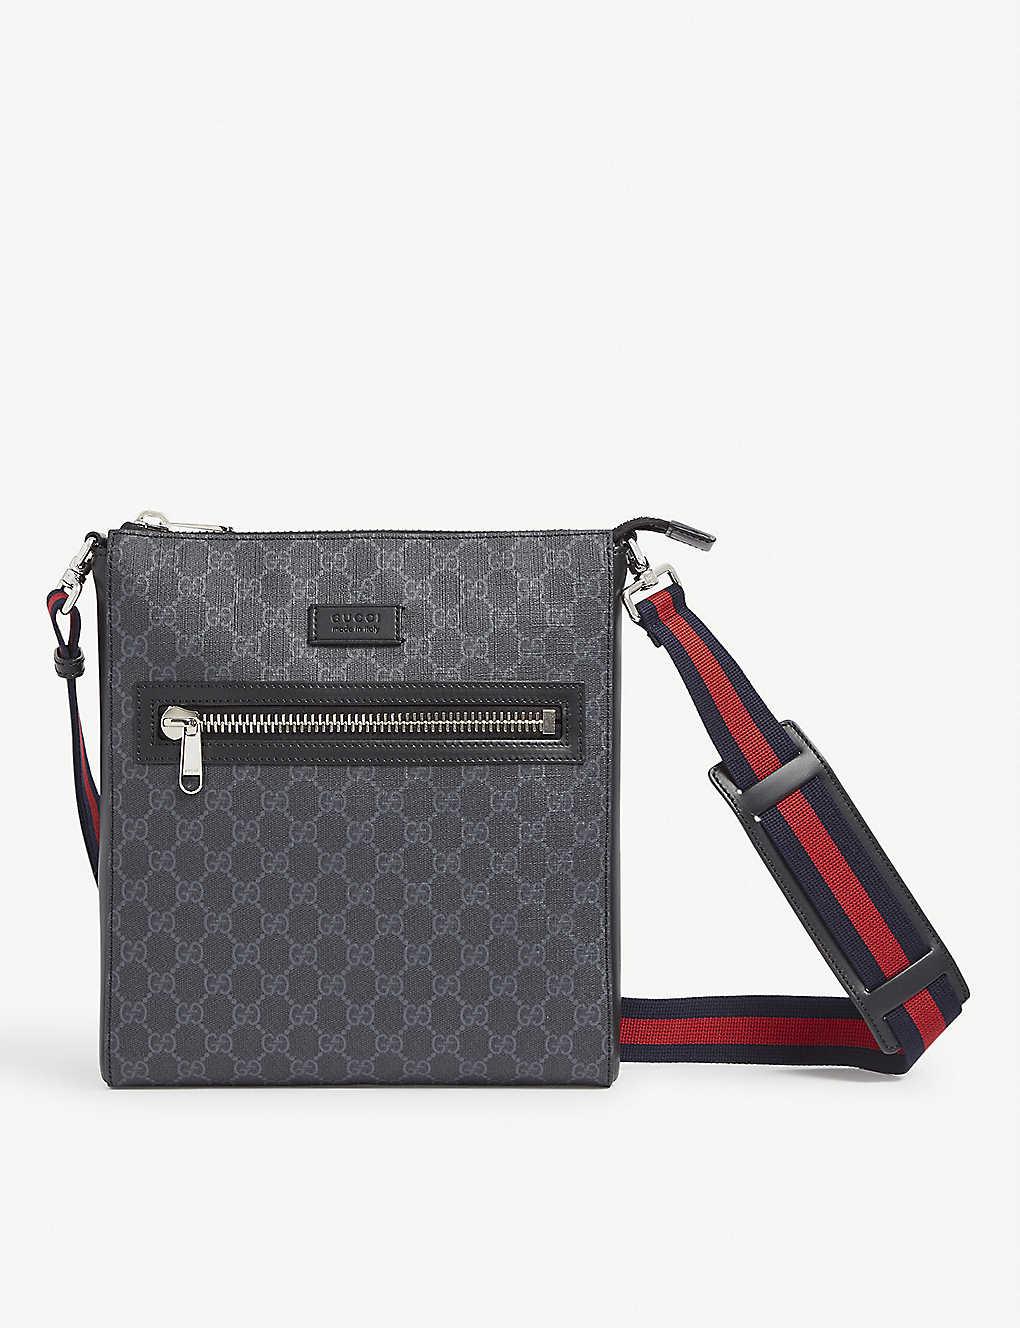 Gucci Supreme Logo Canvas Flight Bag in Black for Men - Lyst